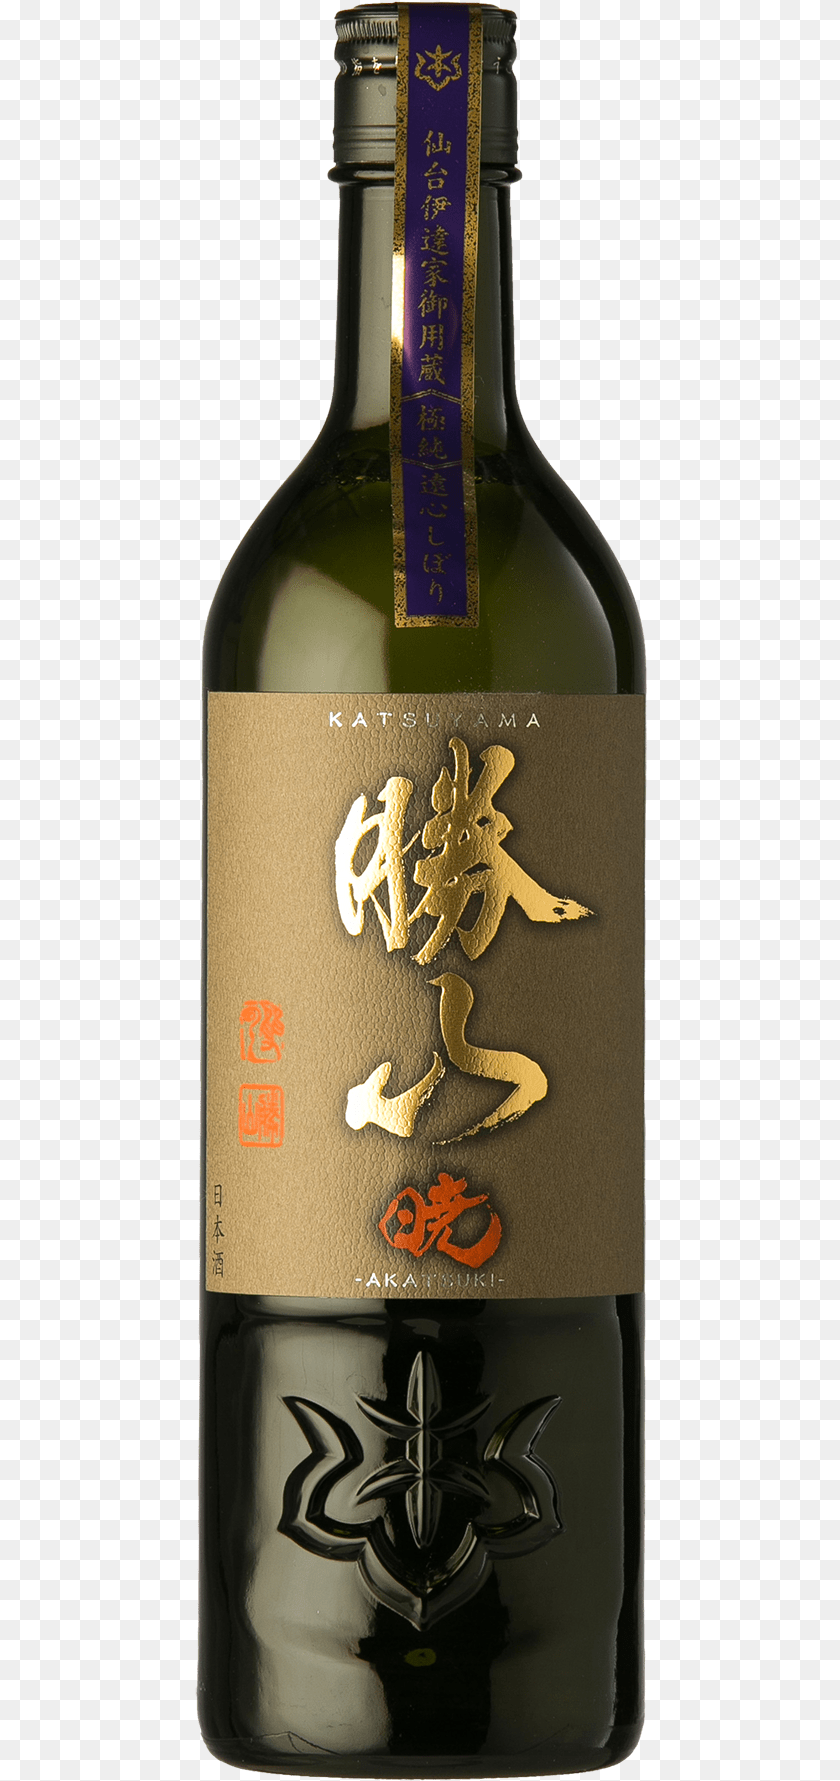 453x1781 Ky 8 Katsuyama Akatsuki Junmai Daiginjo Wine Bottle, Alcohol, Beverage, Beer, Sake PNG